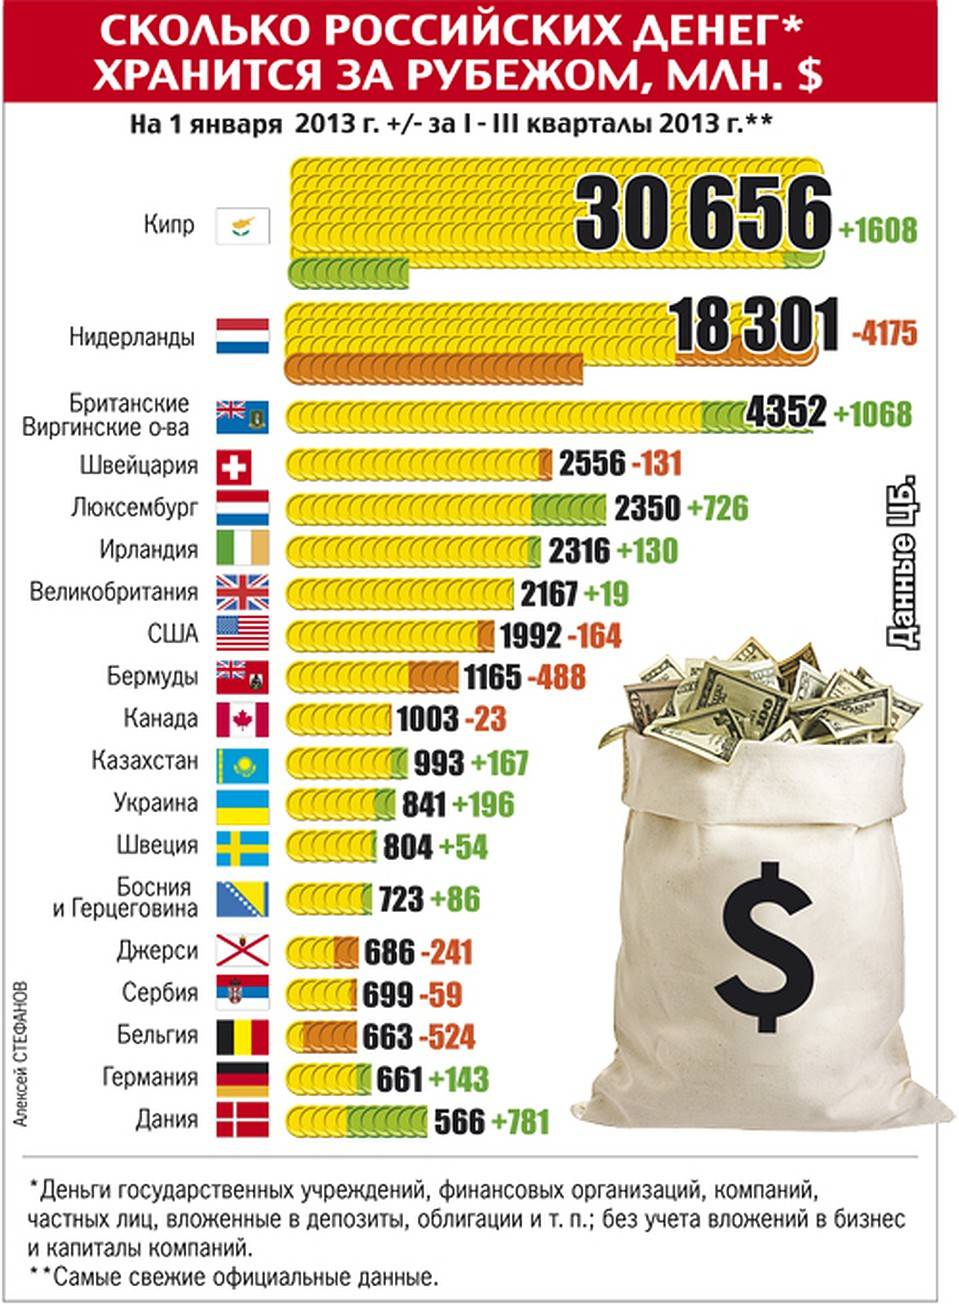 Сколько денег россии за границей